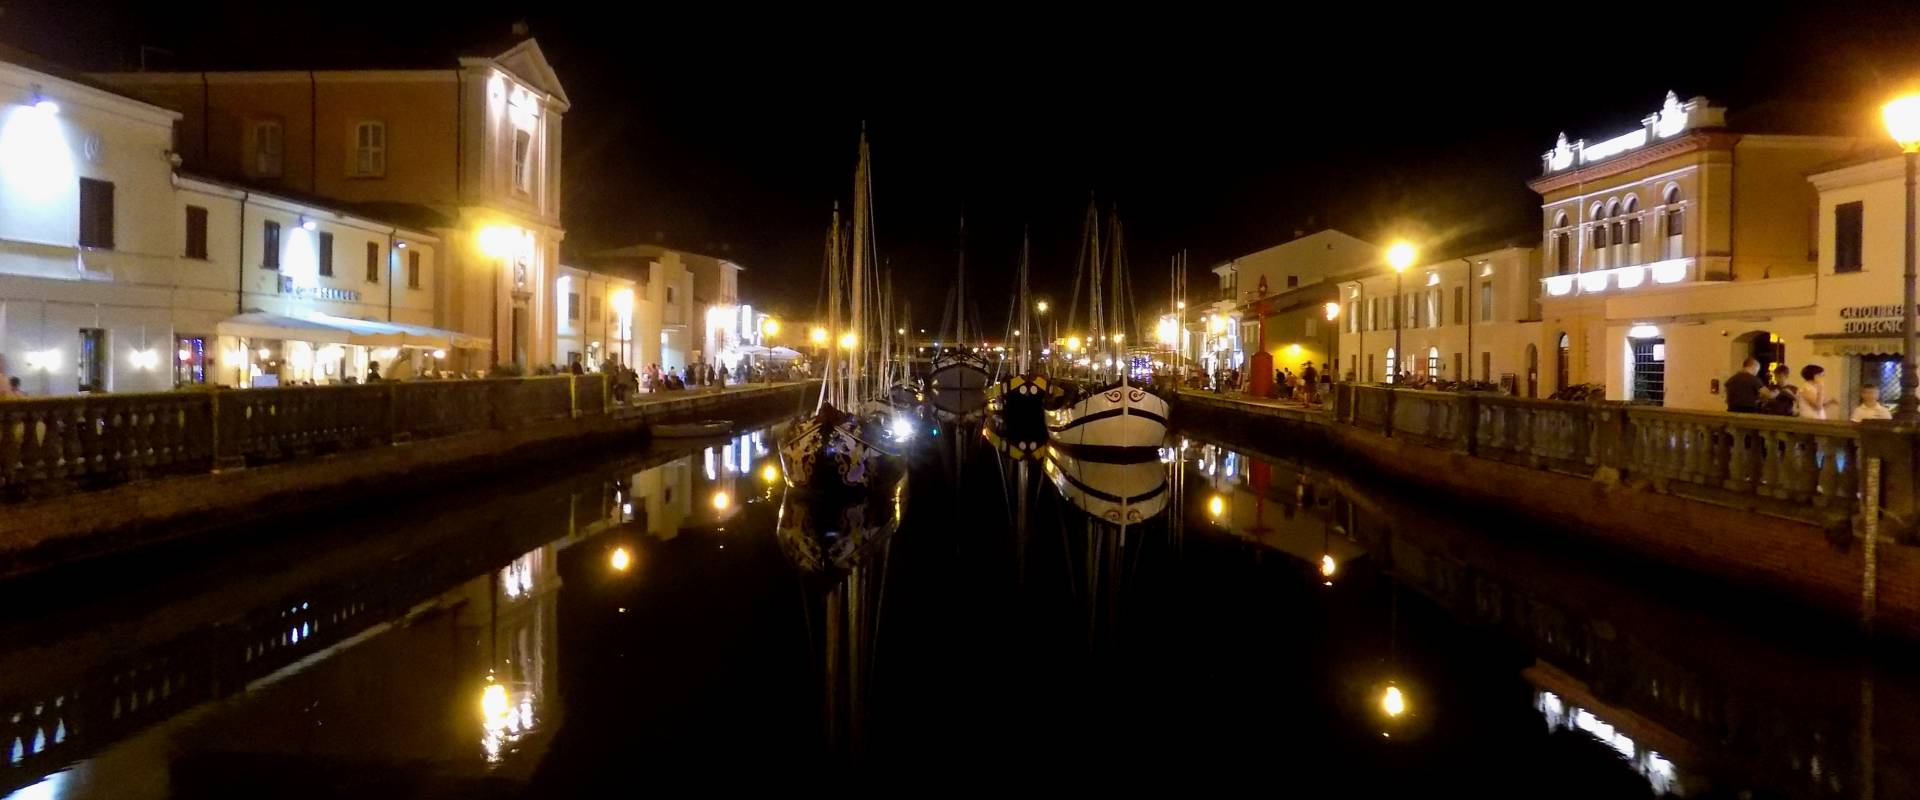 Notturno Porto Canale foto di Elpo81